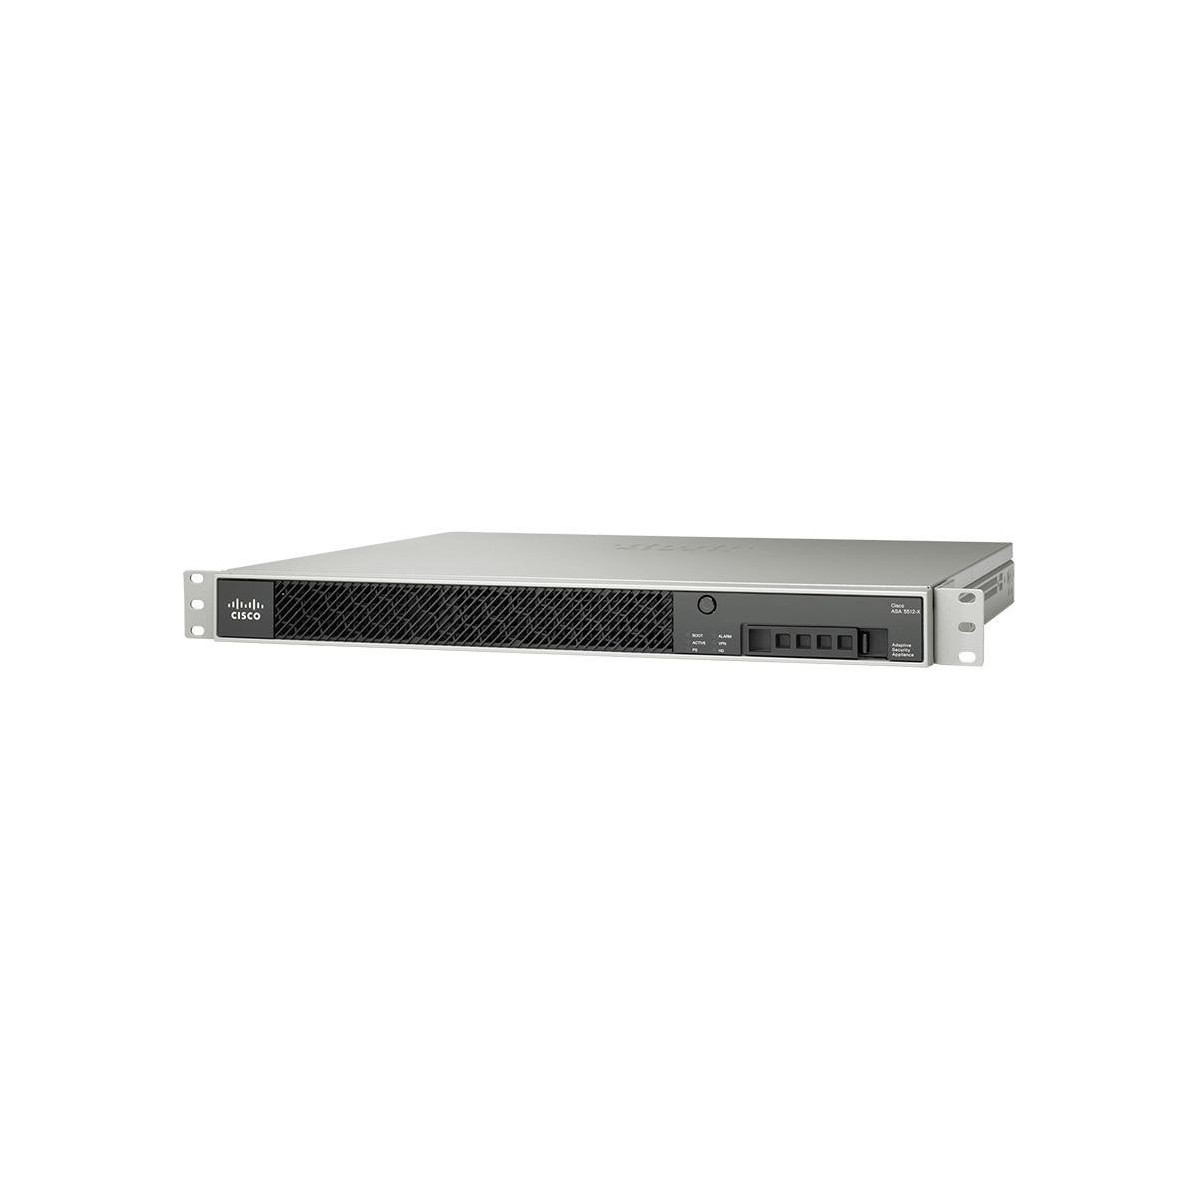 Cisco ASA 5555-X - 4000 Mbit-s - 700 Mbit-s - 1300 Mbit-s - 67.9 dB - 2500 user(s) - 3DES